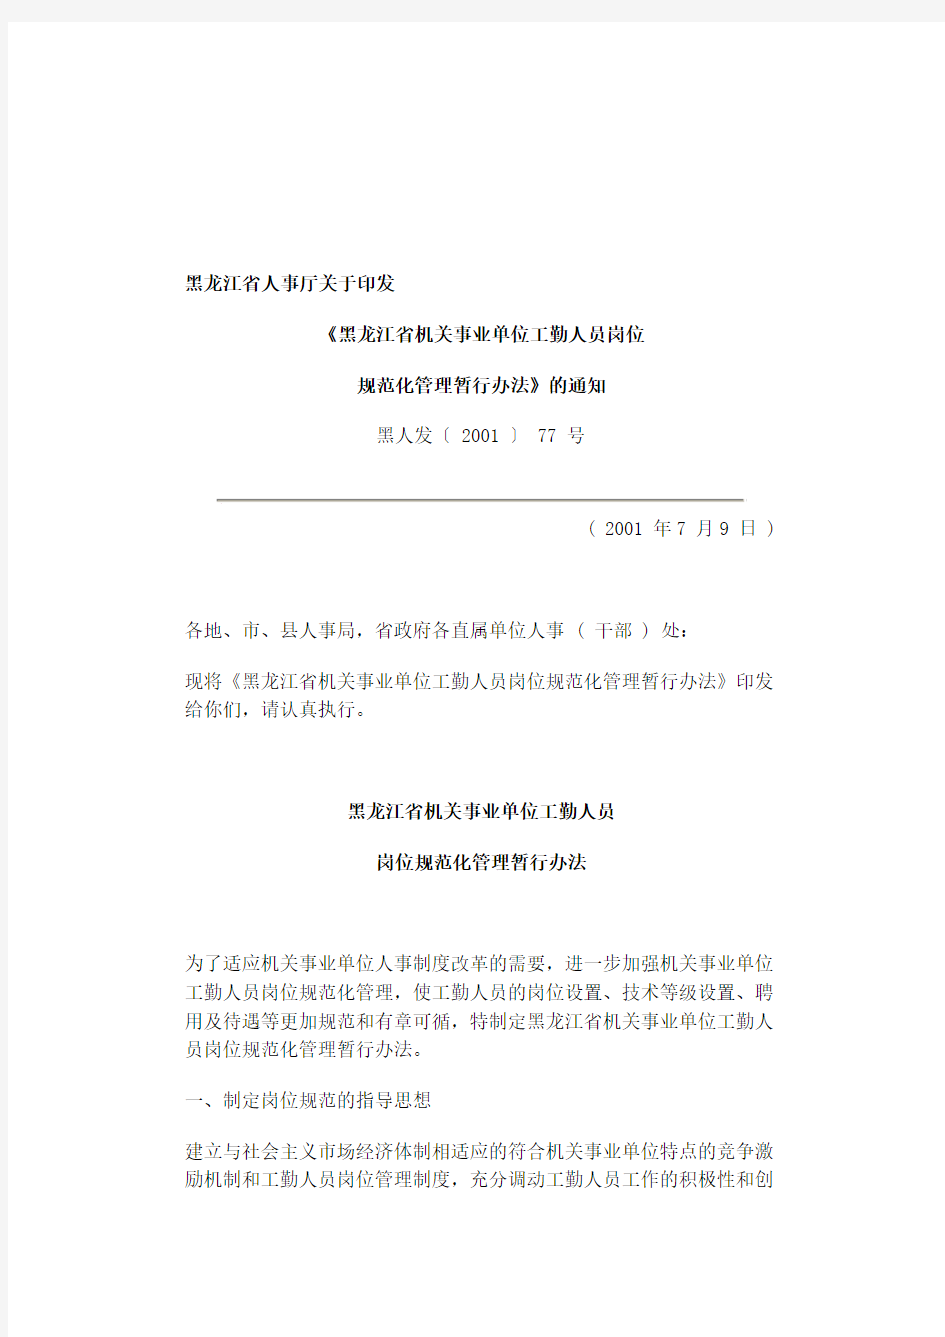 黑龙江省机关事业单位工勤人员管理办法